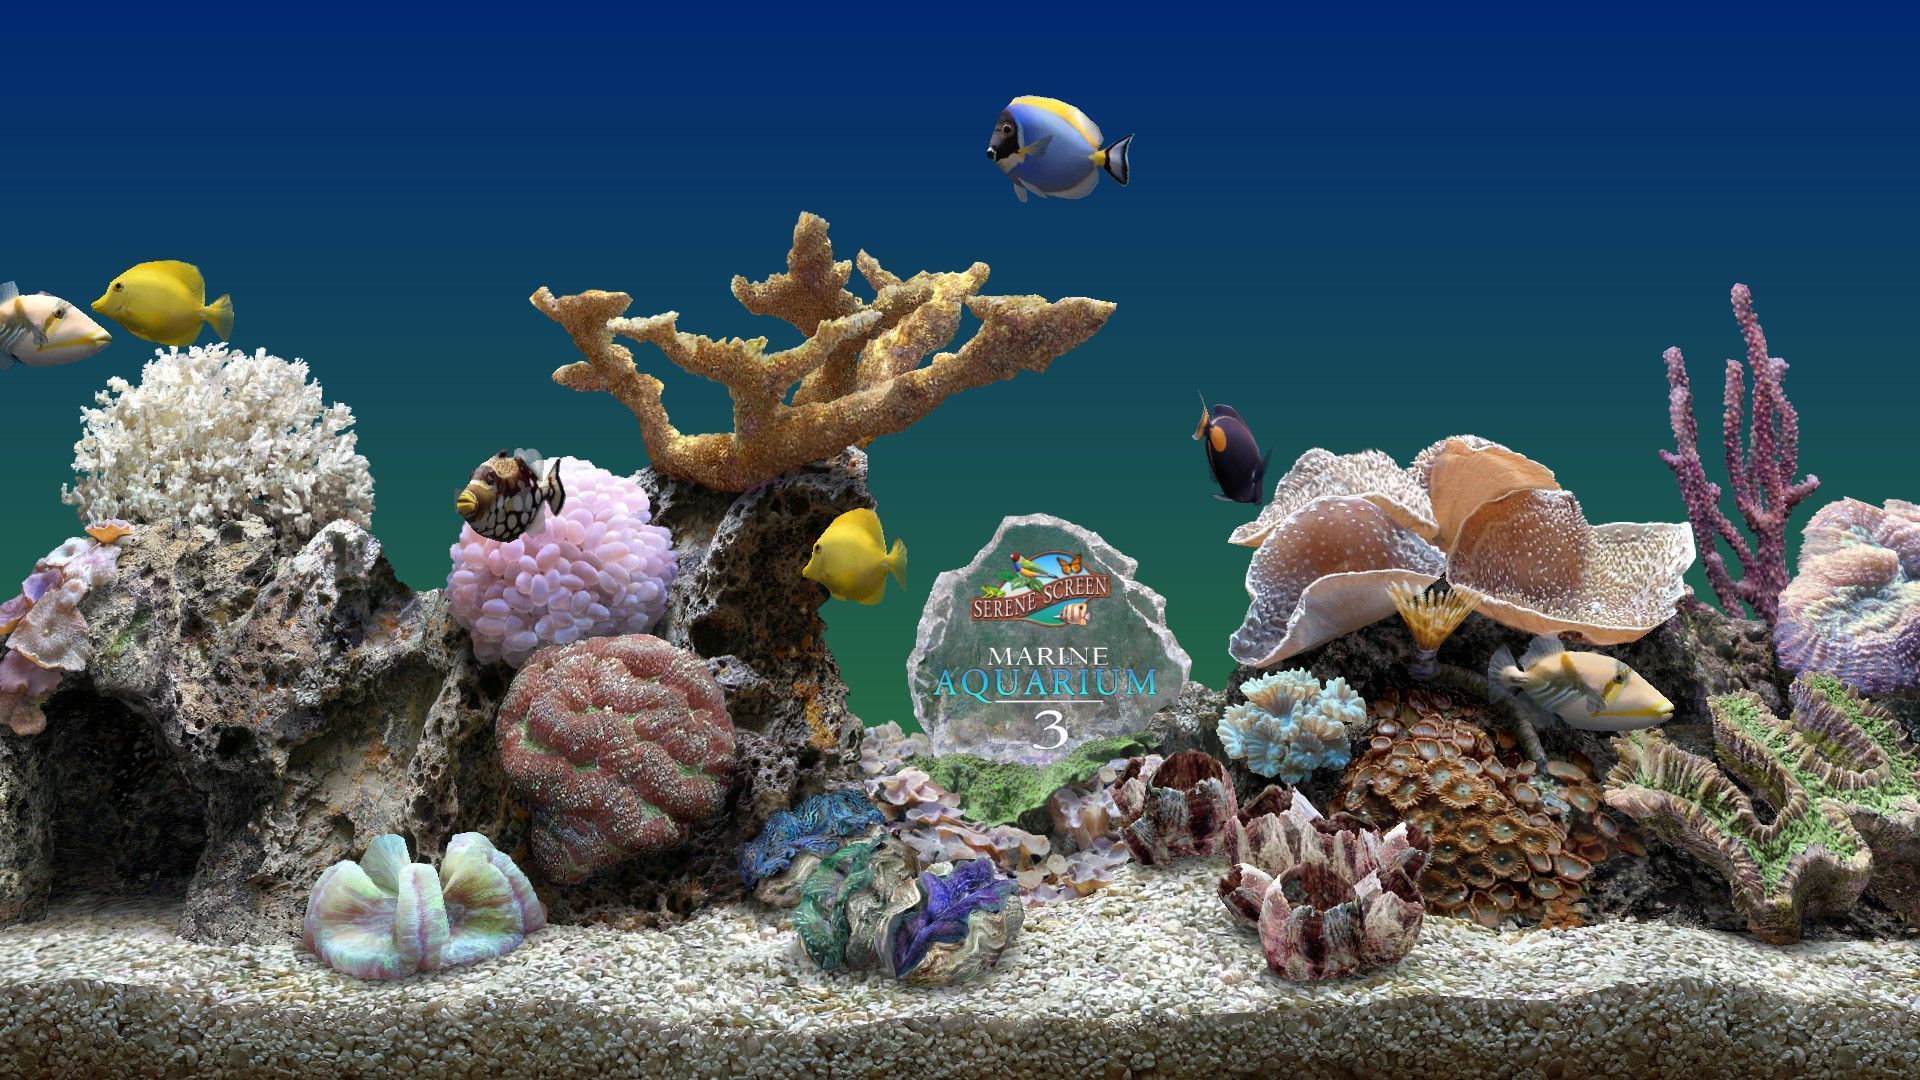  Aquarien Hintergrundbild 1920x1080. Aquarium DeskD